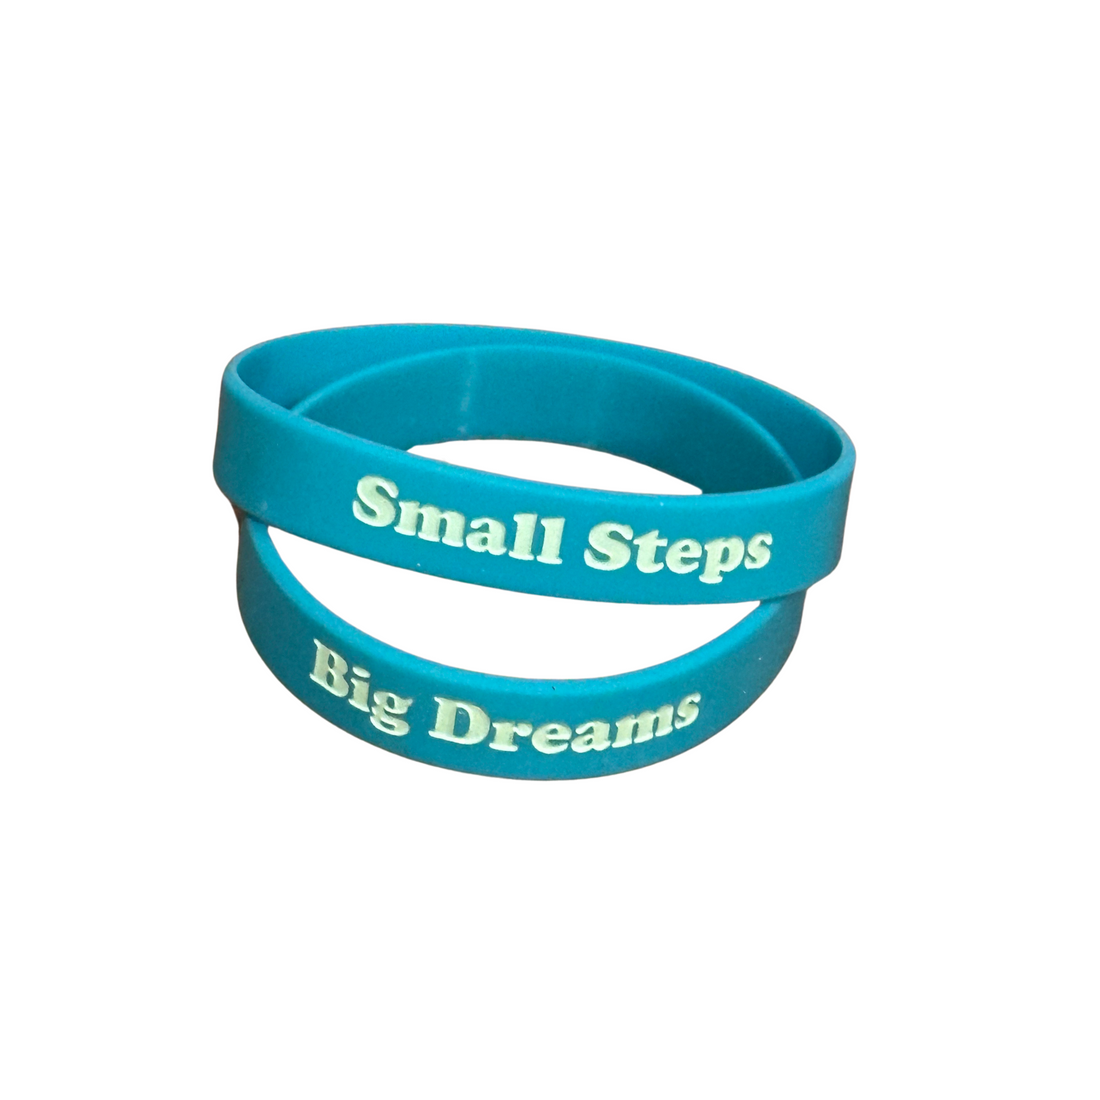 Dream Big / Small Steps Fundraiser Wristband